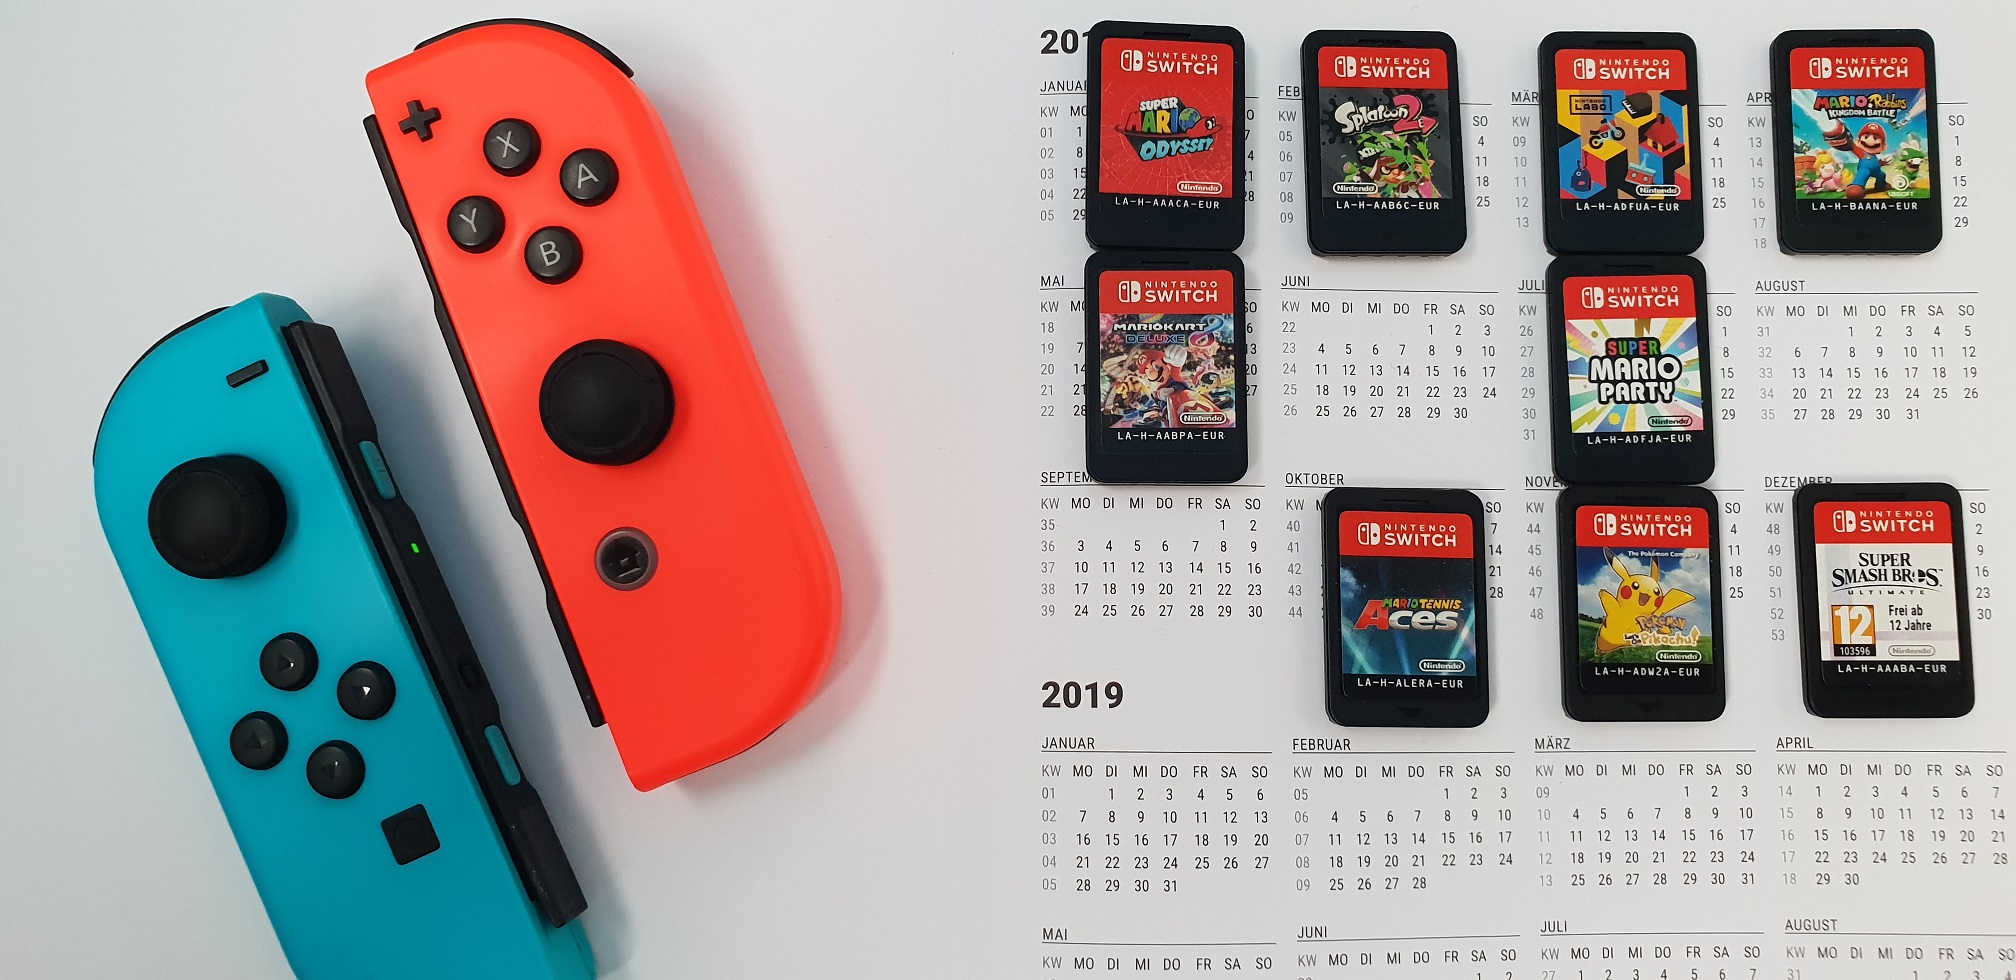 Aké exkluzivity ponúkne Nintendo Switch v roku 2019?